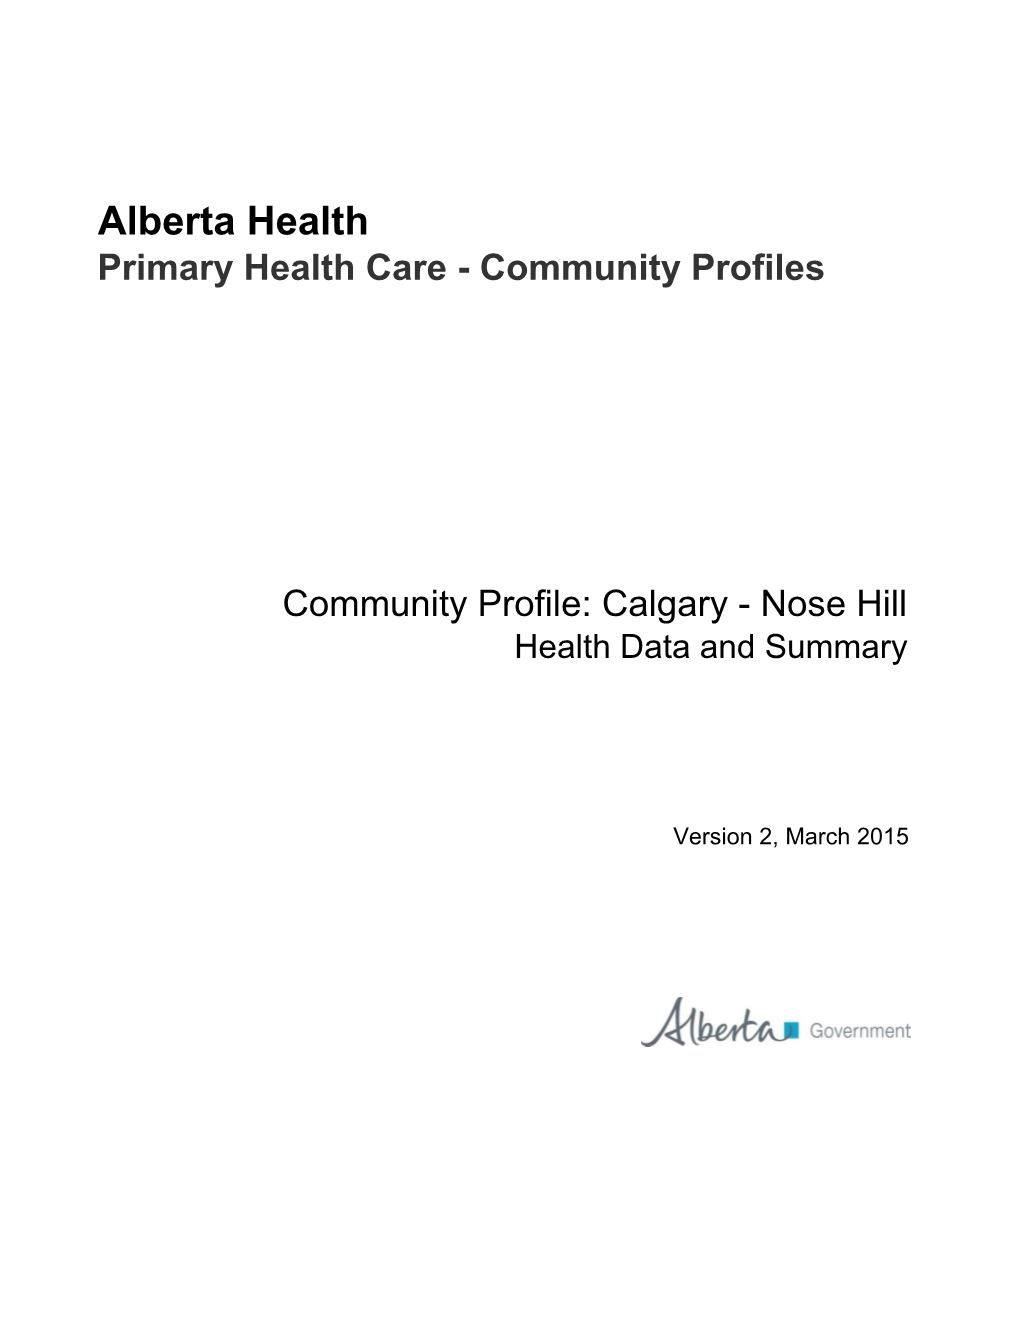 Primary Health Care Community Profile